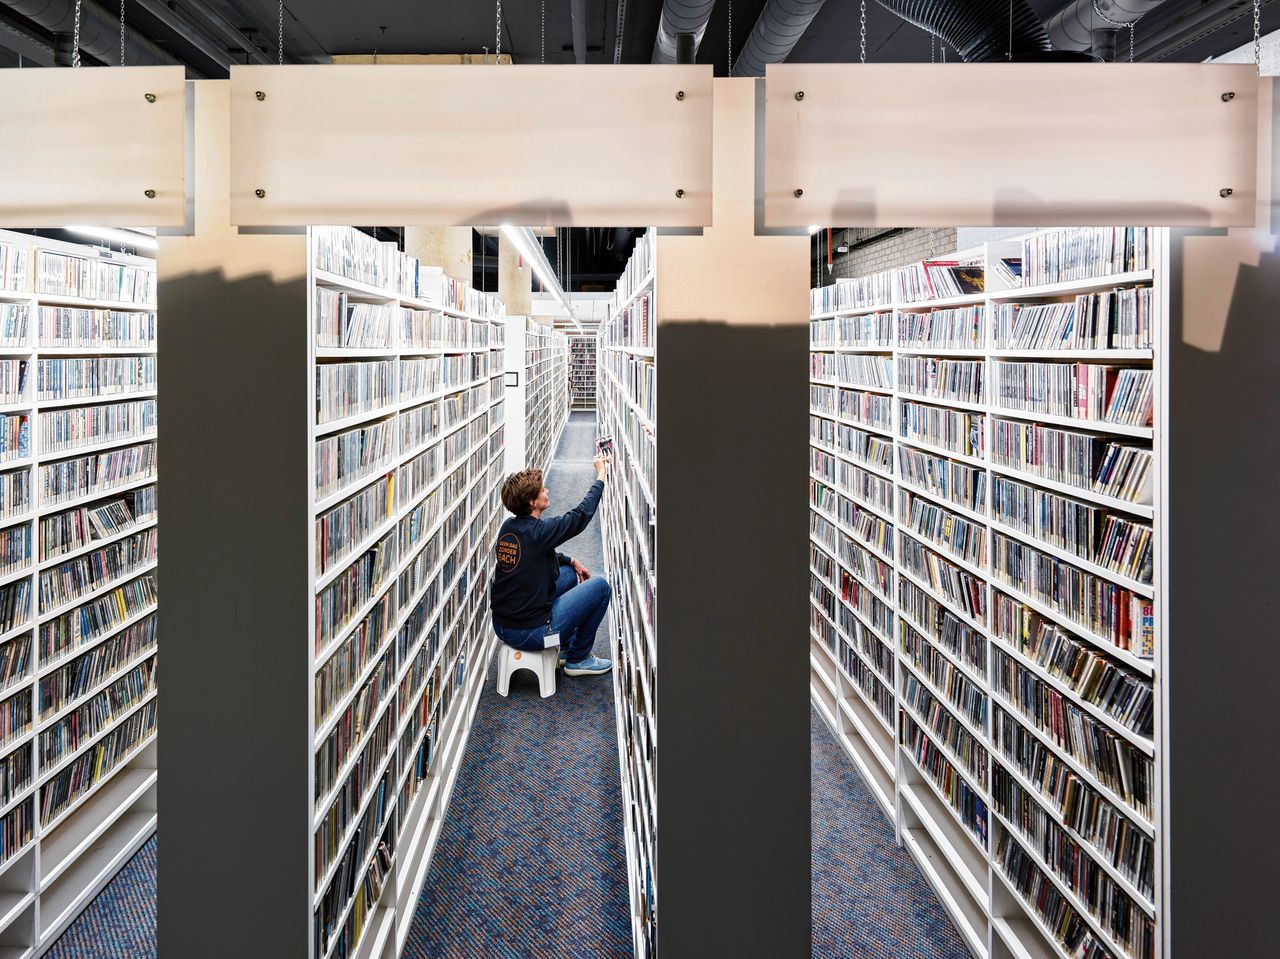 De collectie van de muziekbibliotheek in Rotterdam (Muziekweb) omvat 300.000 lp’s, 600.000 cd’s en 30.000 muziek-dvd’s.